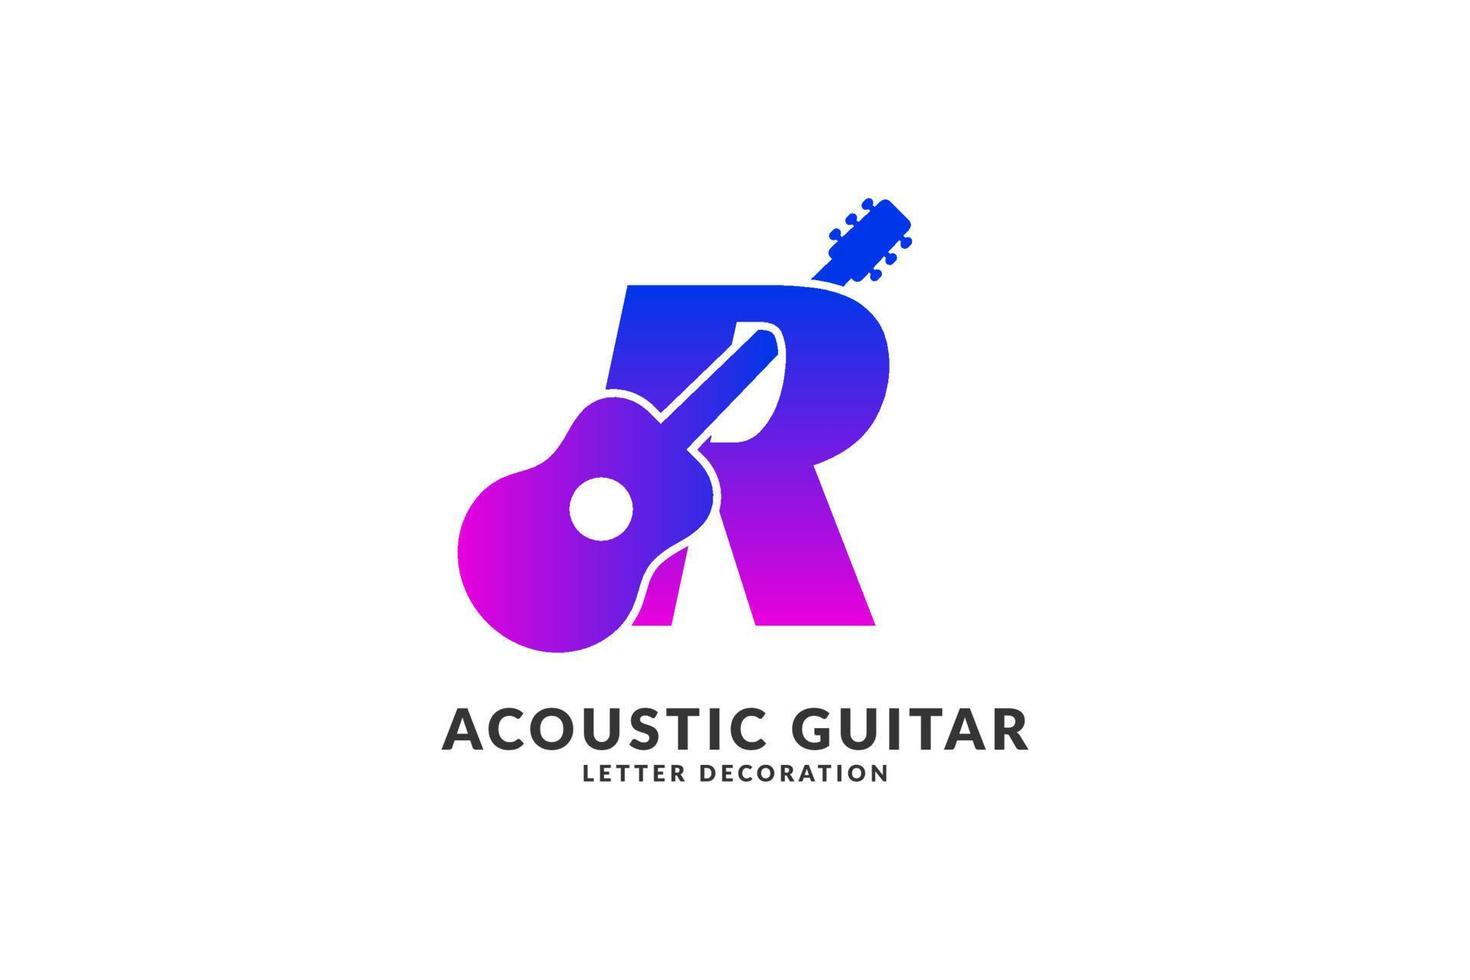 letra aislada r decoración de guitarra acústica vector de color de moda para el logotipo de identidad del músico y el elemento del título del festival o concierto